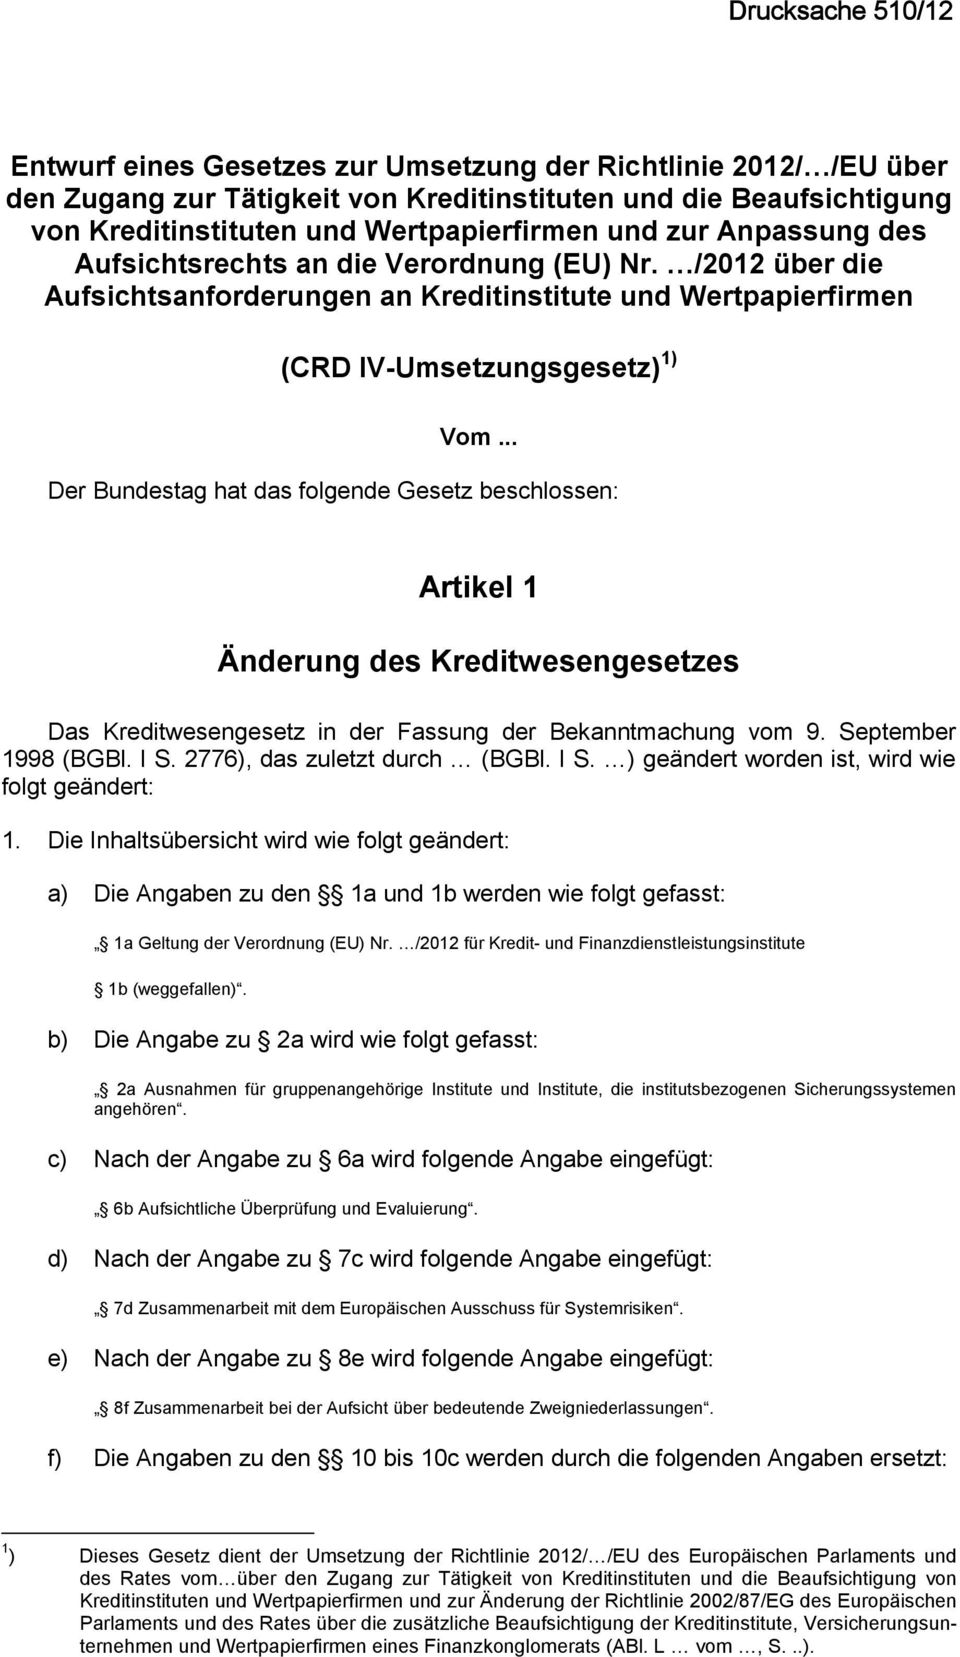 .. Der Bundestag hat das folgende Gesetz beschlossen: Artikel 1 Änderung des Kreditwesengesetzes Das Kreditwesengesetz in der Fassung der Bekanntmachung vom 9. September 1998 (BGBl. I S.